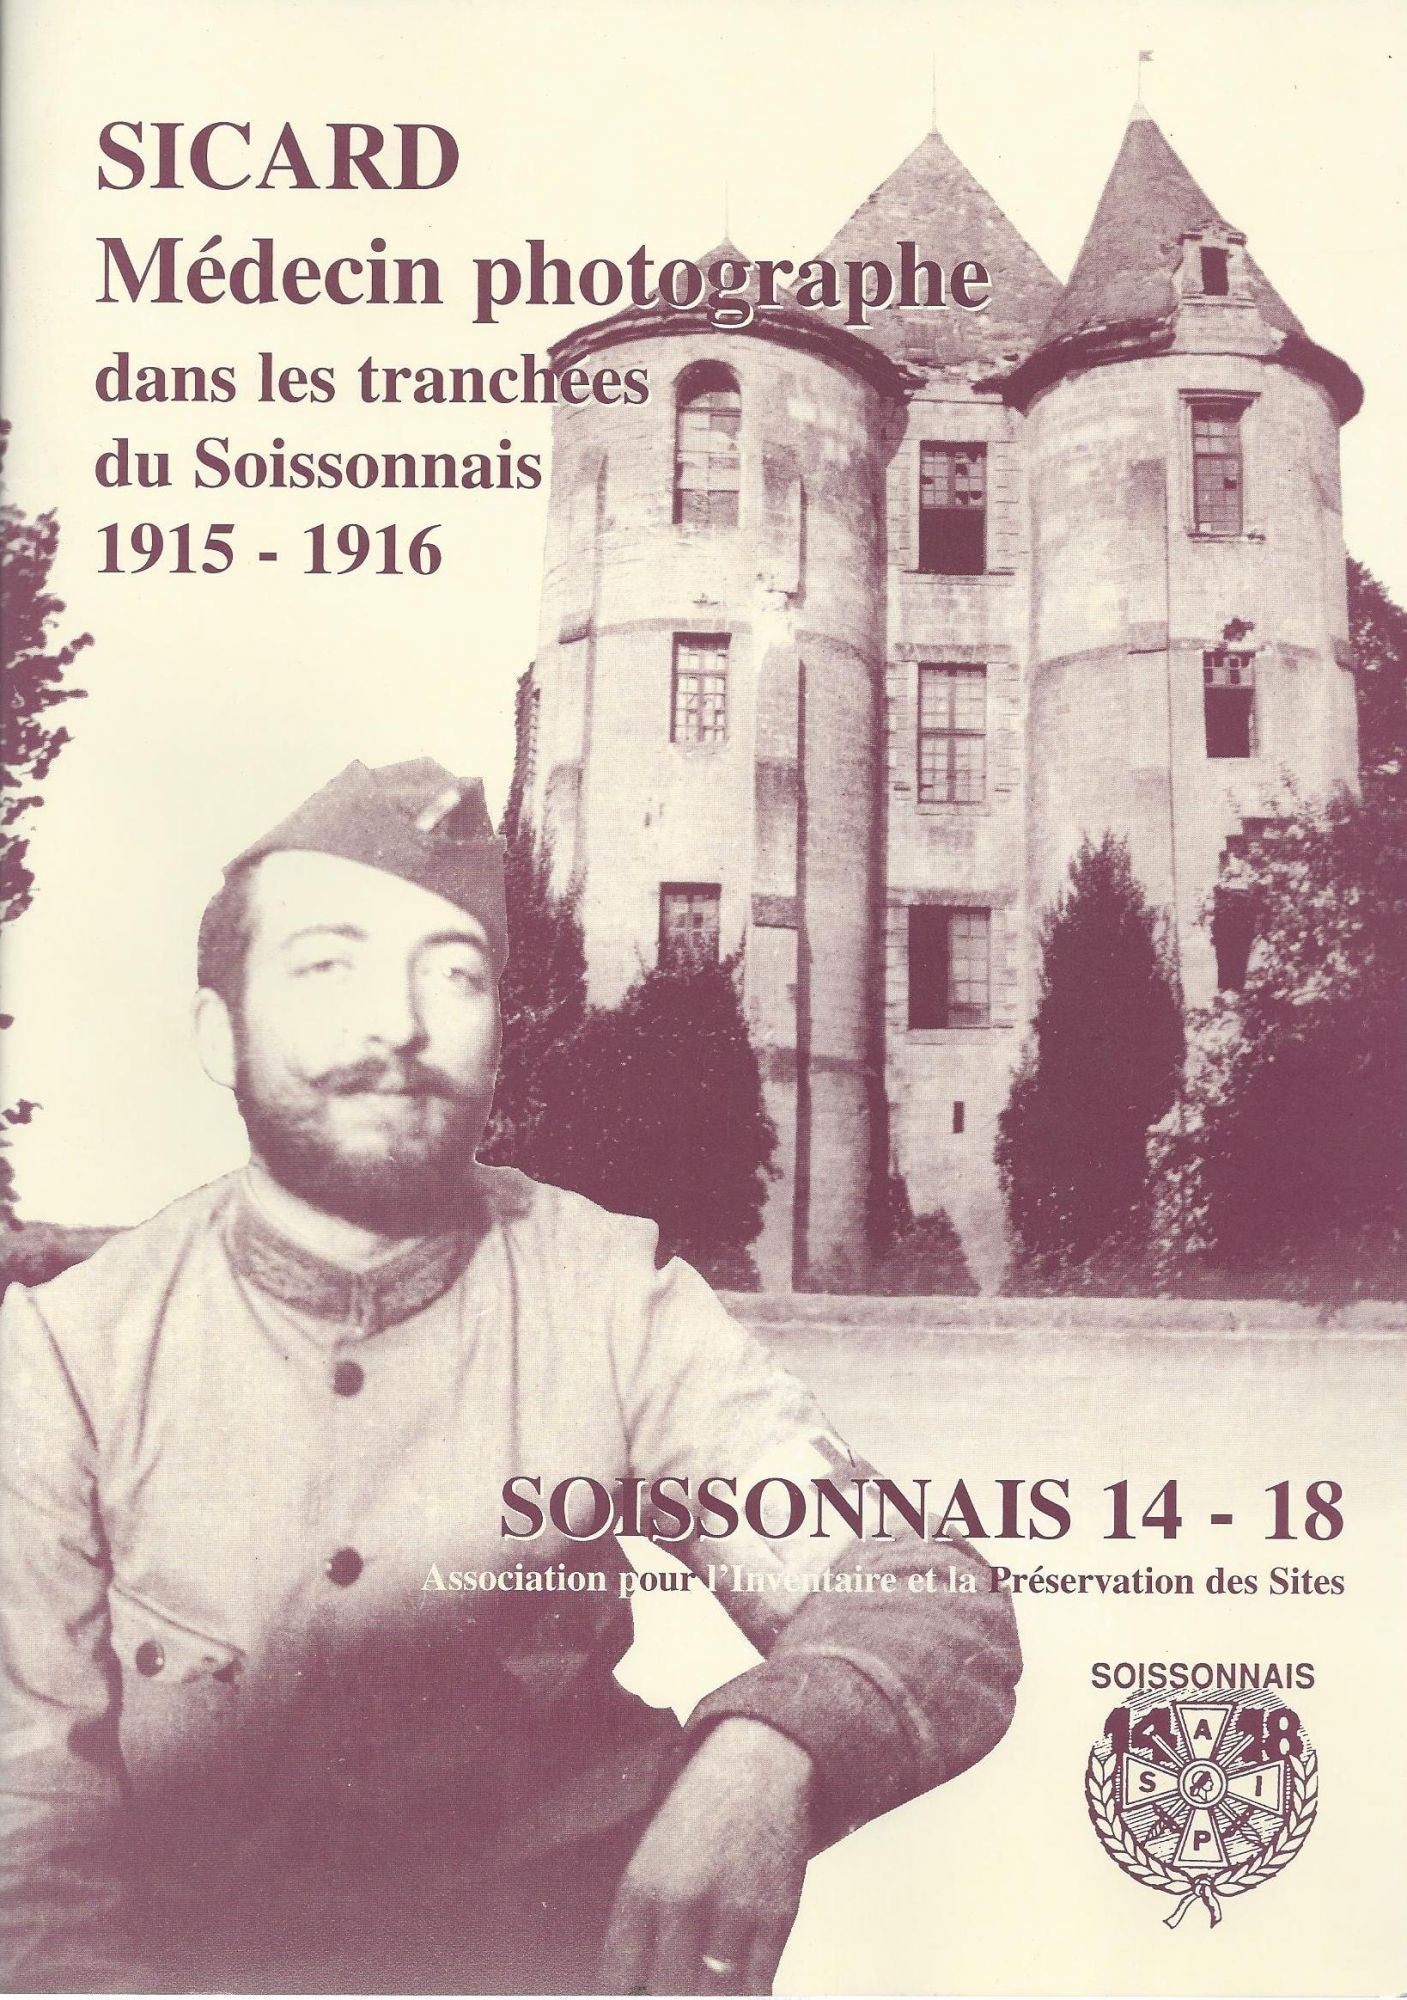 Item #23439 Sicard, médecin photographe dans les tranchées du Soissonnais 1915-1916. Laurent Sicard.